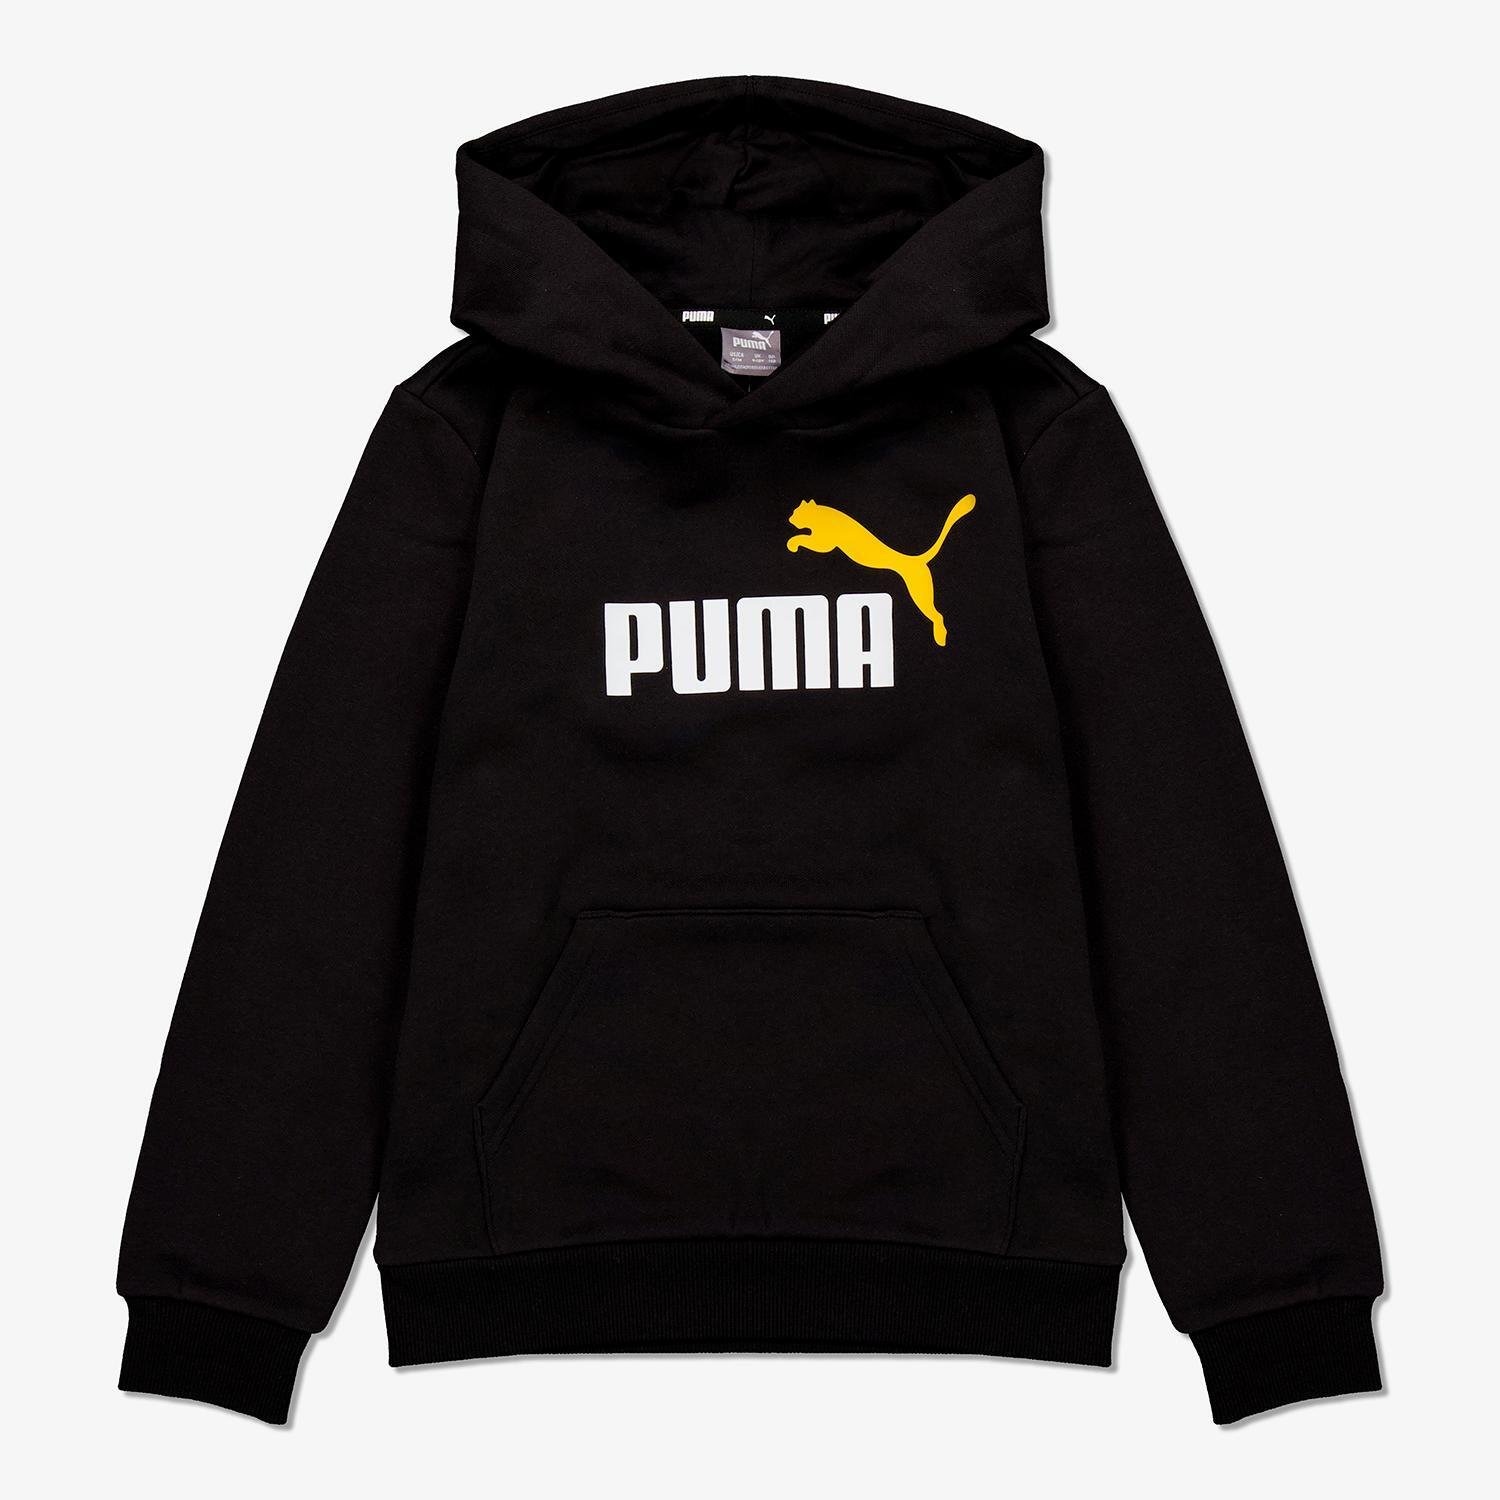 Puma Puma trui zwart kinderen kinderen